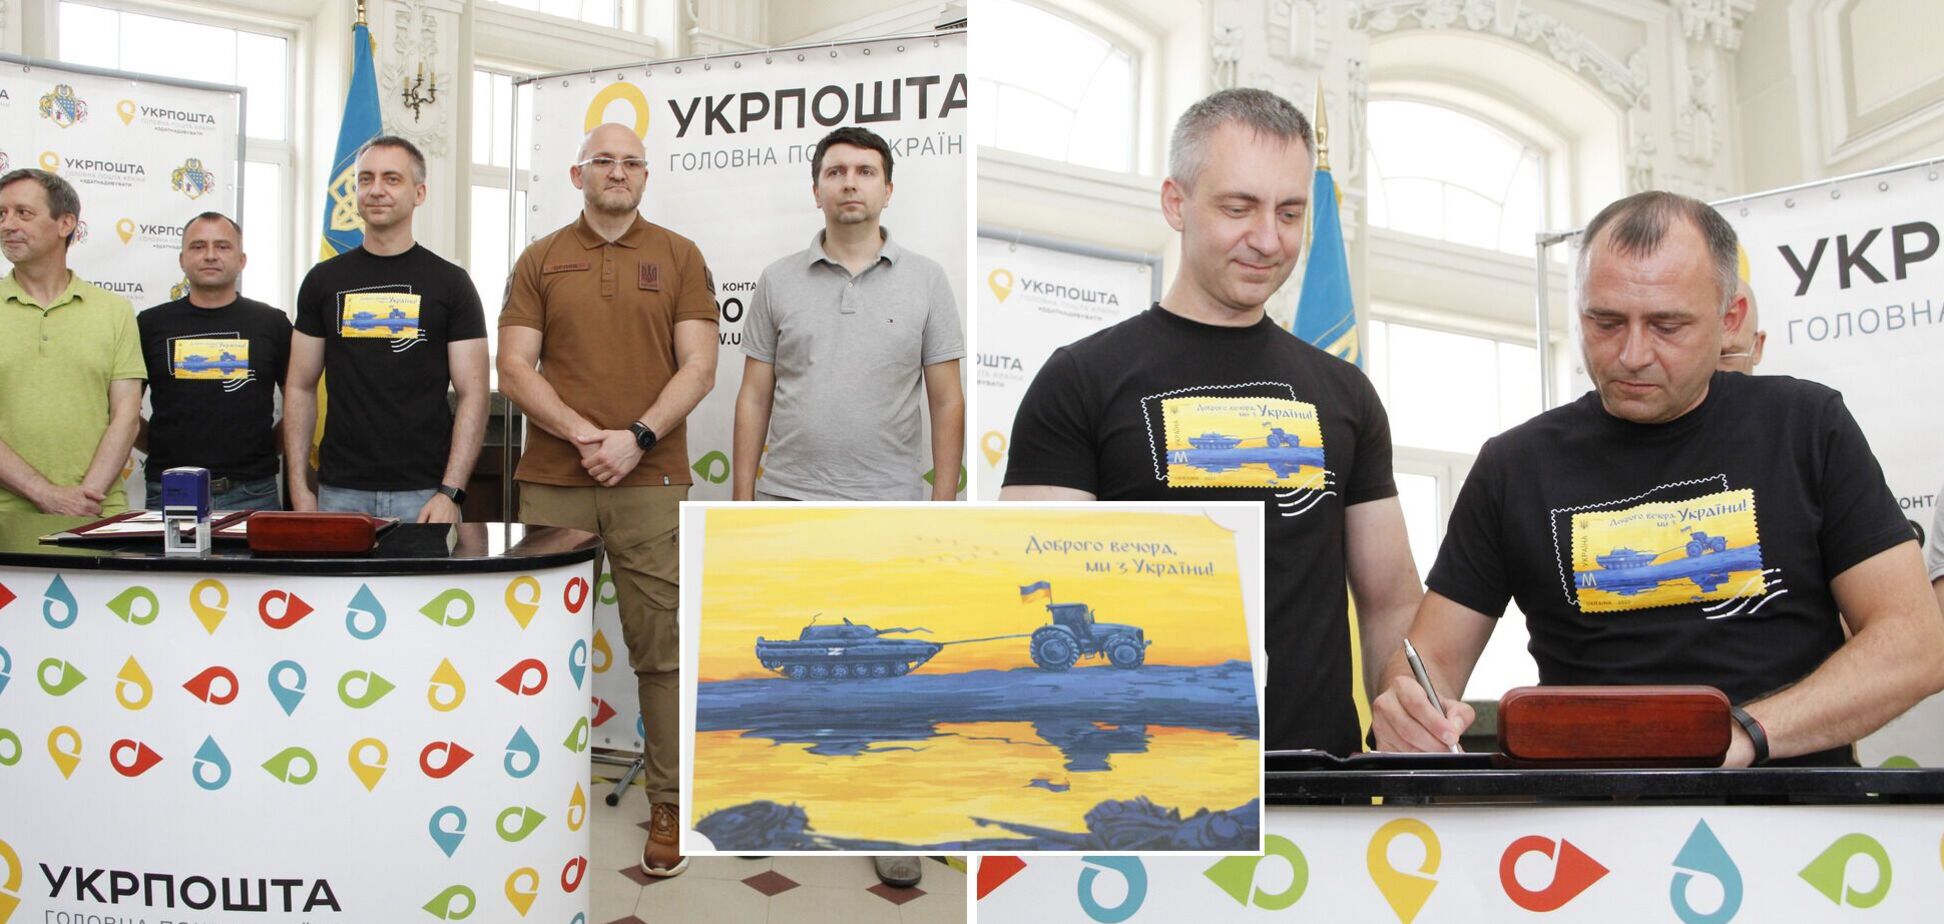 'Доброго вечора, ми з України!': у Дніпрі презентували нову поштову марку